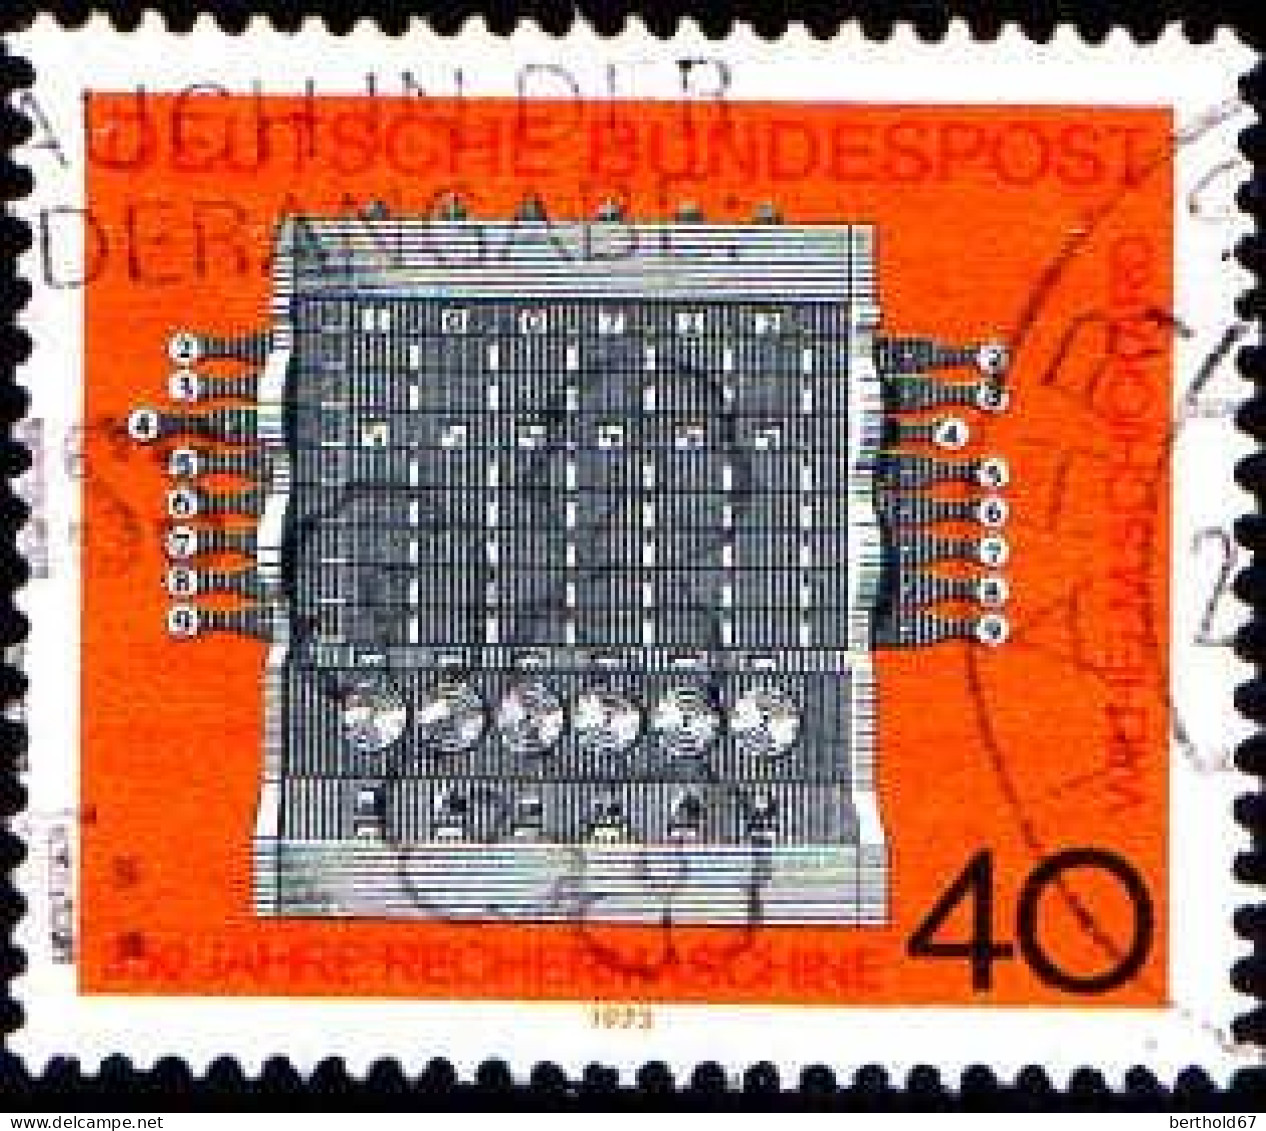 RFA Poste Obl Yv: 627 Mi:778 Wilhelm Schickard Rechenmaschine (Belle Obl.mécanique) - Oblitérés